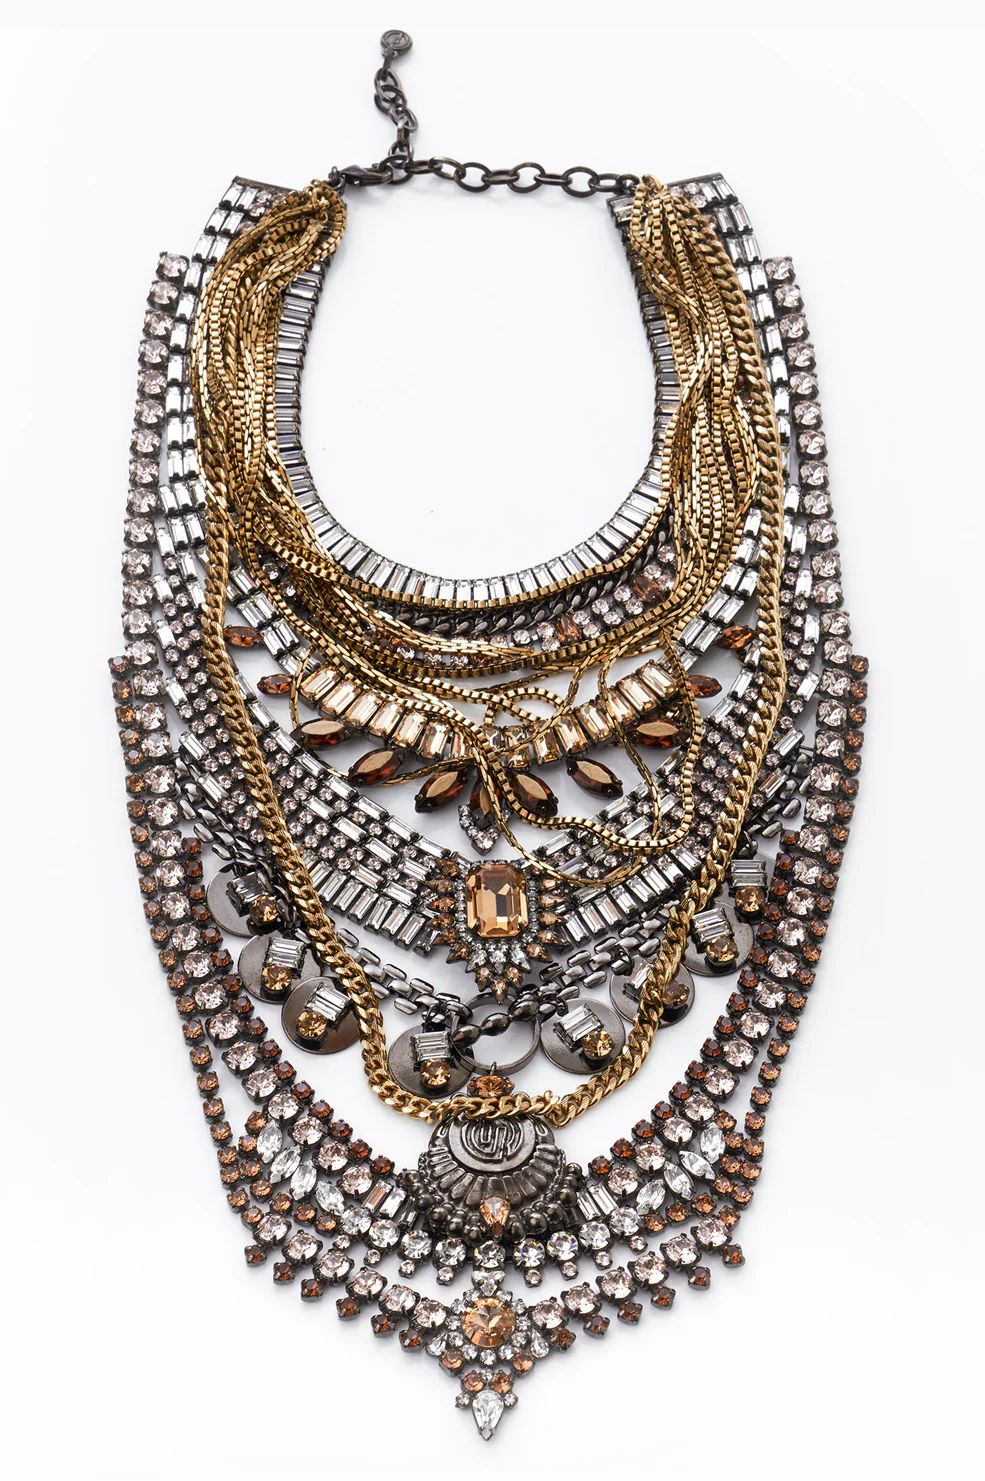 High End Statement Piece | Dense Layered Chain Necklace w/ Swarovski Crystals | Oxidized Brass | ... | DYLANLEX